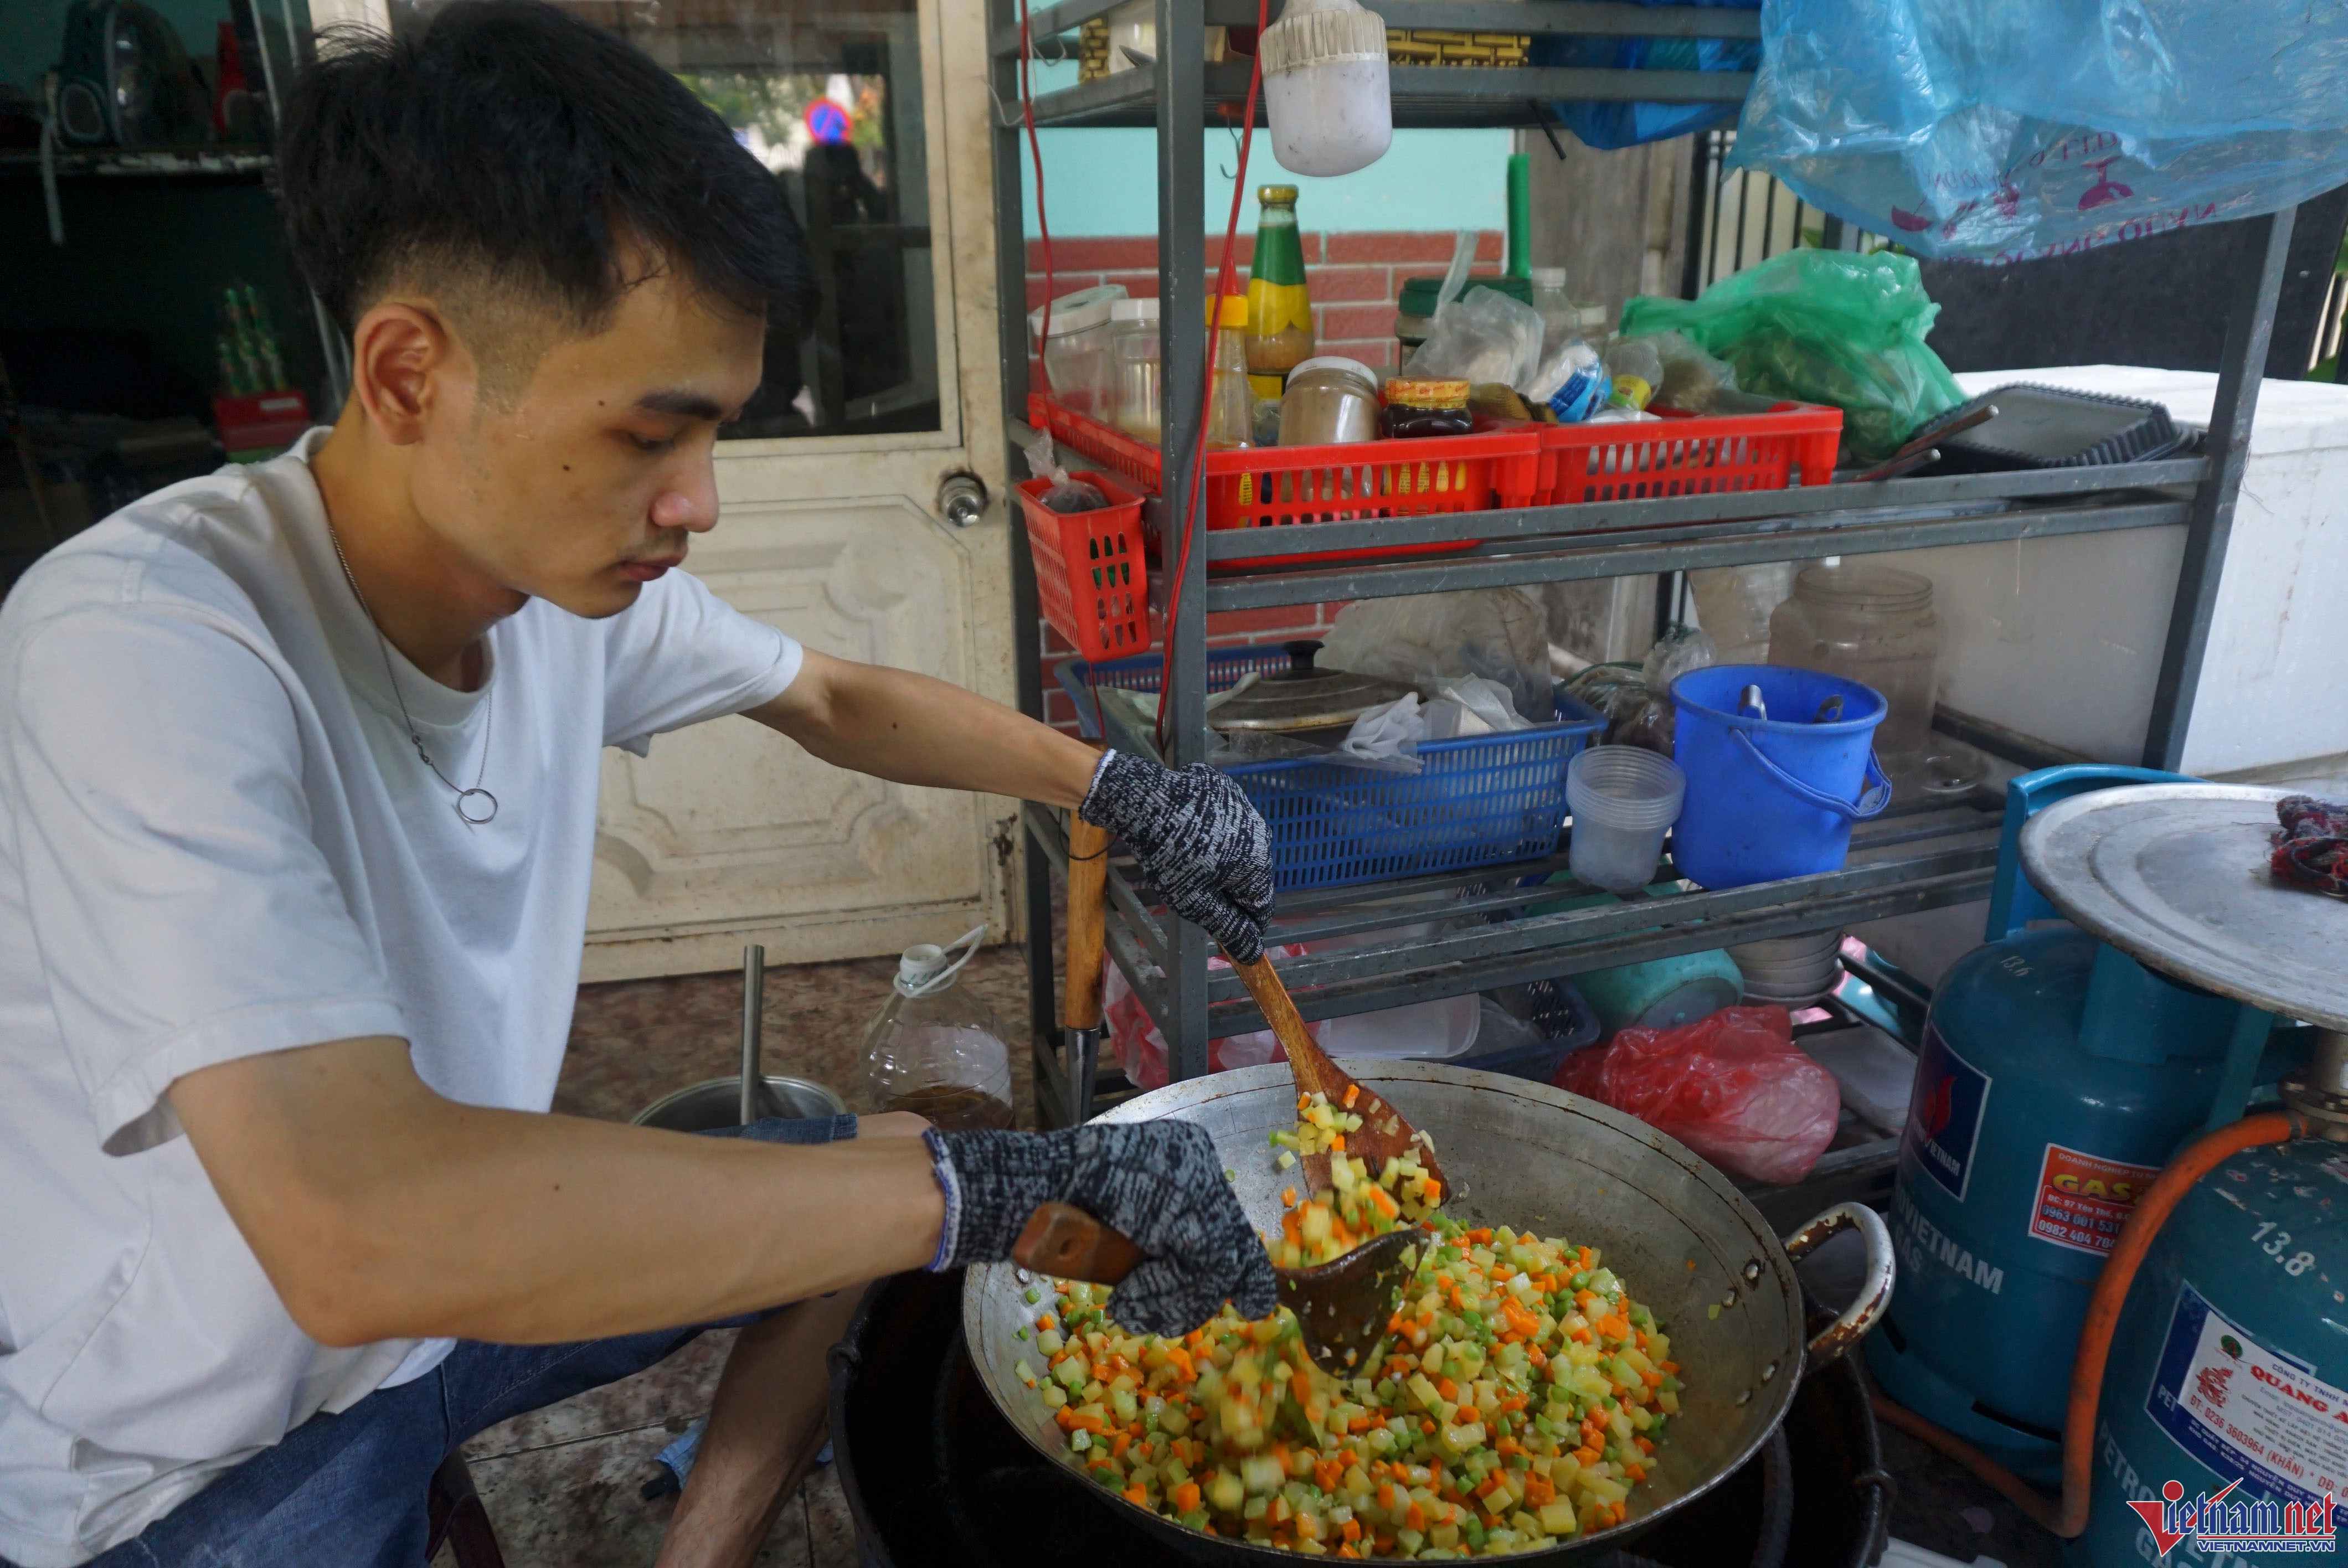 Bếp ăn 0 đồng giúp người khó khăn ở Đà Nẵng